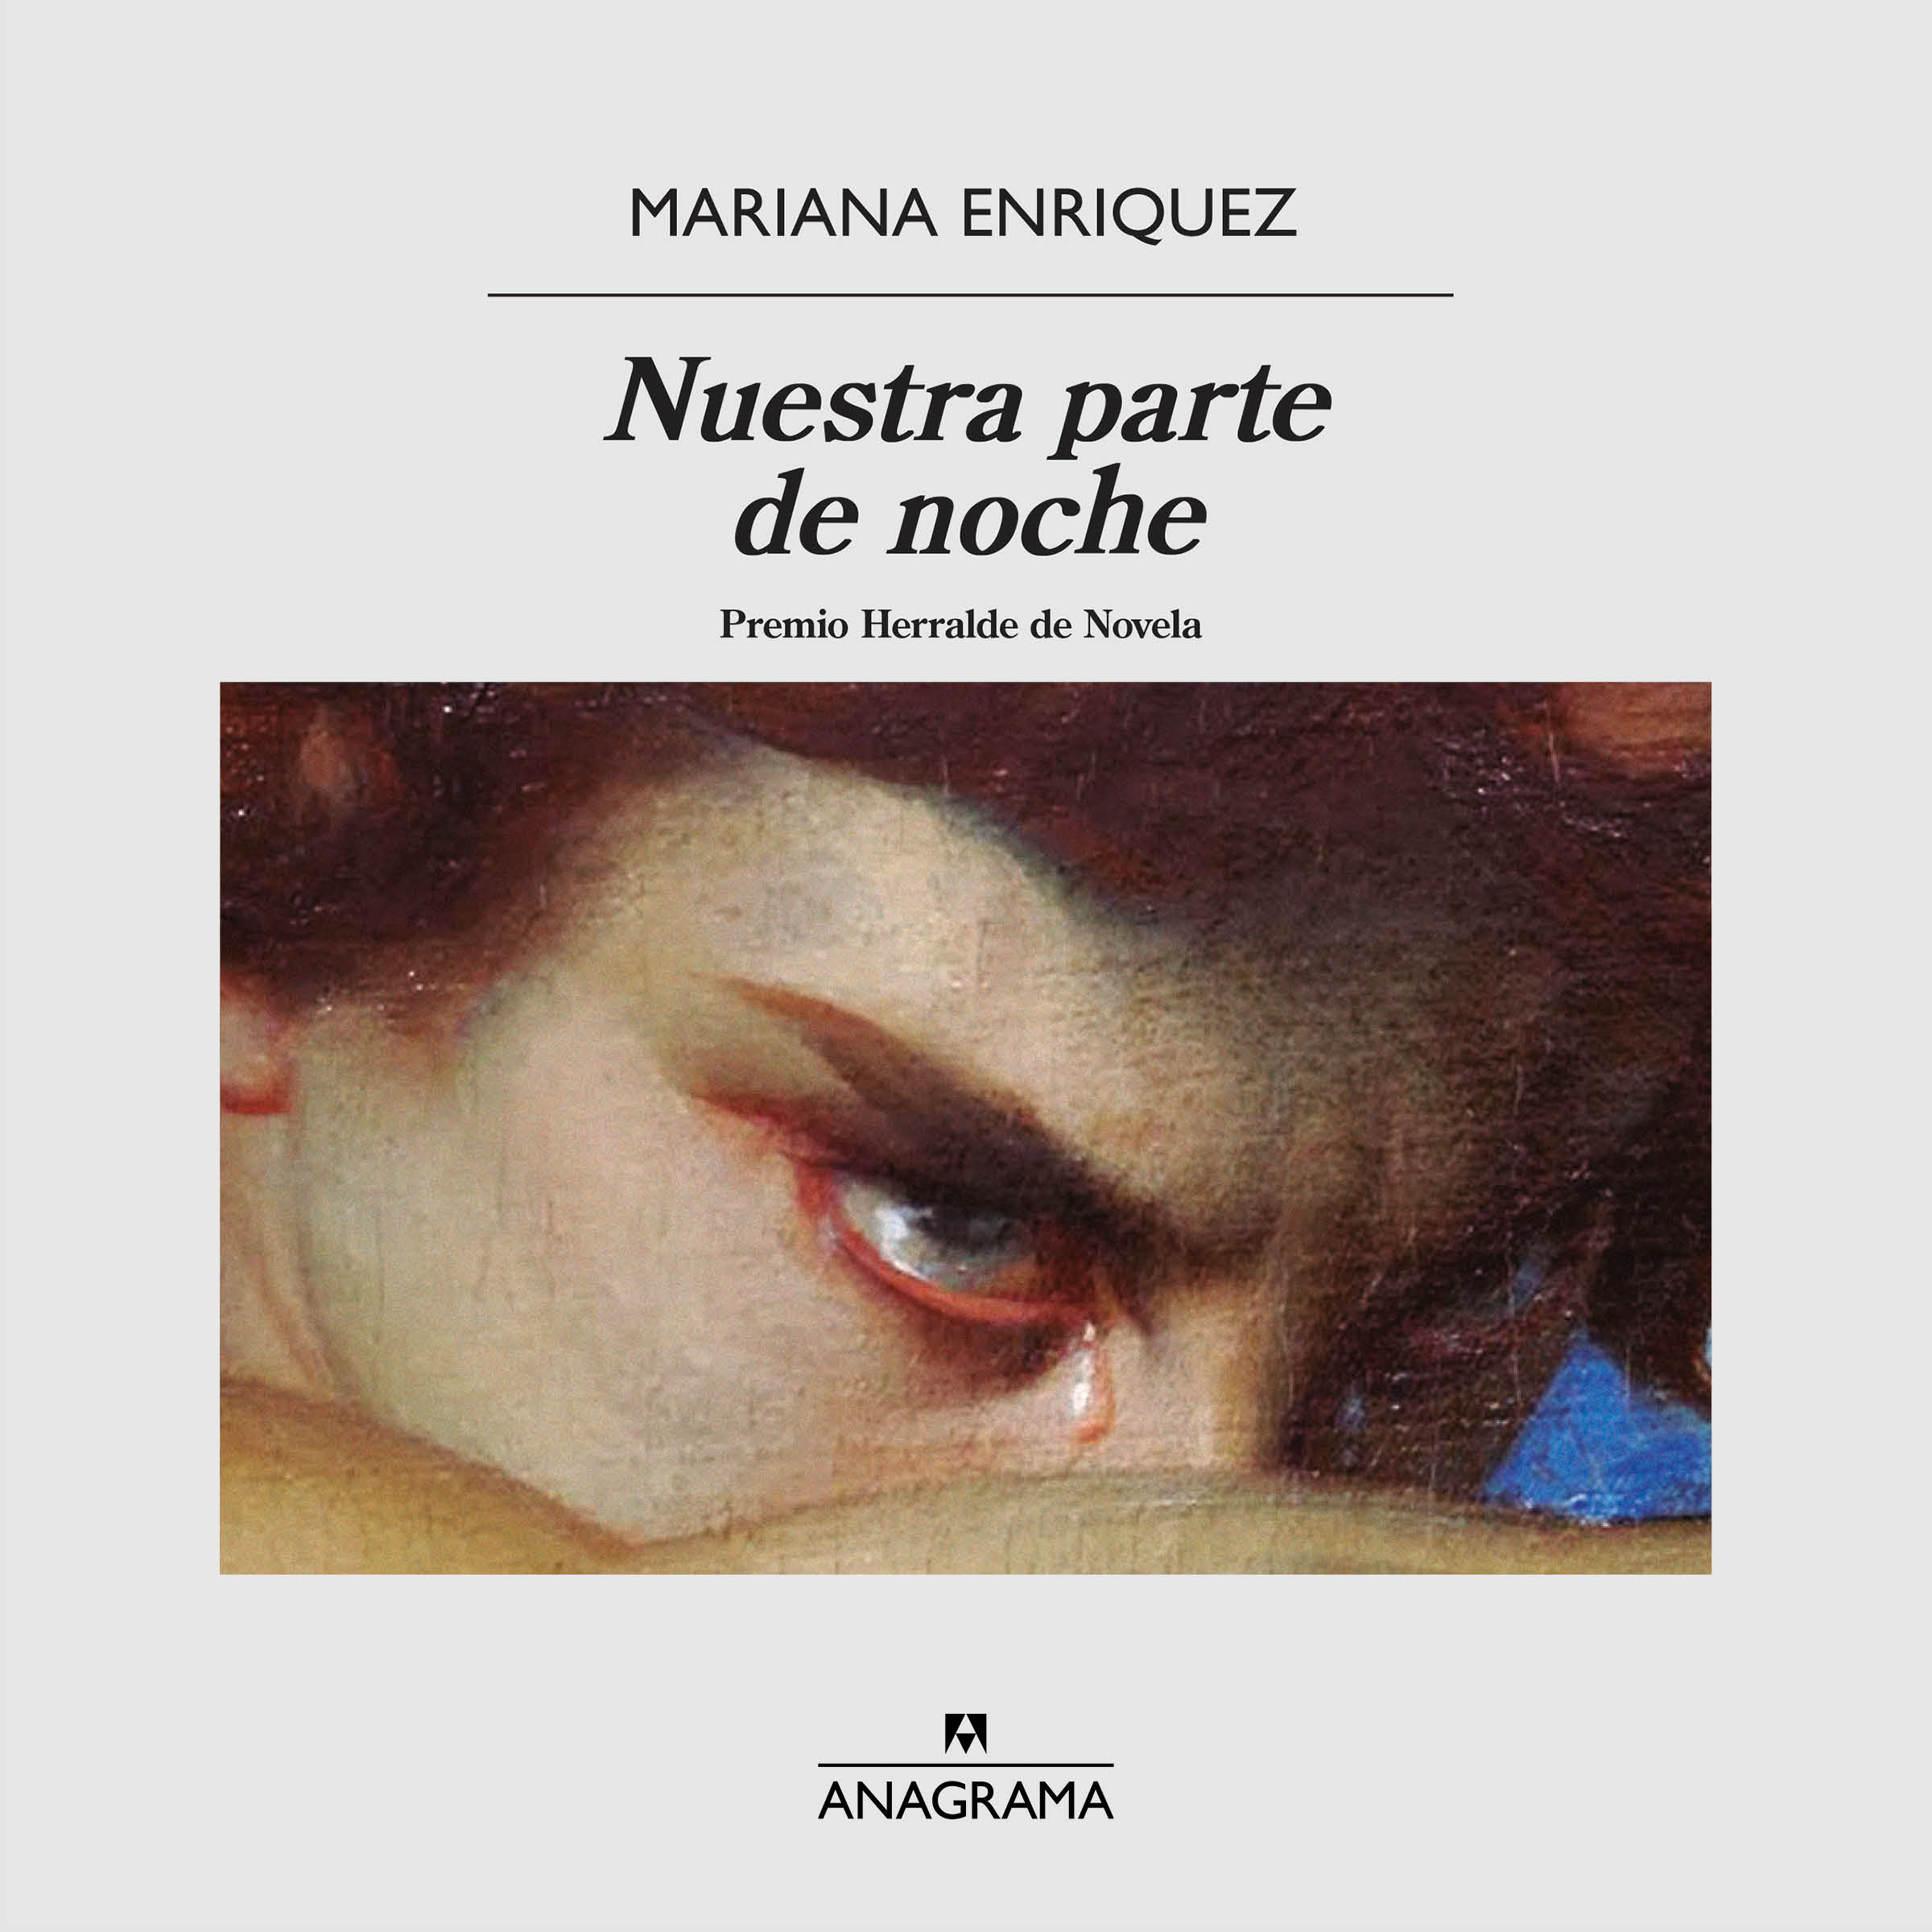 Libro Nuestra parte de noche, Mariana Enriquez. Editorial y